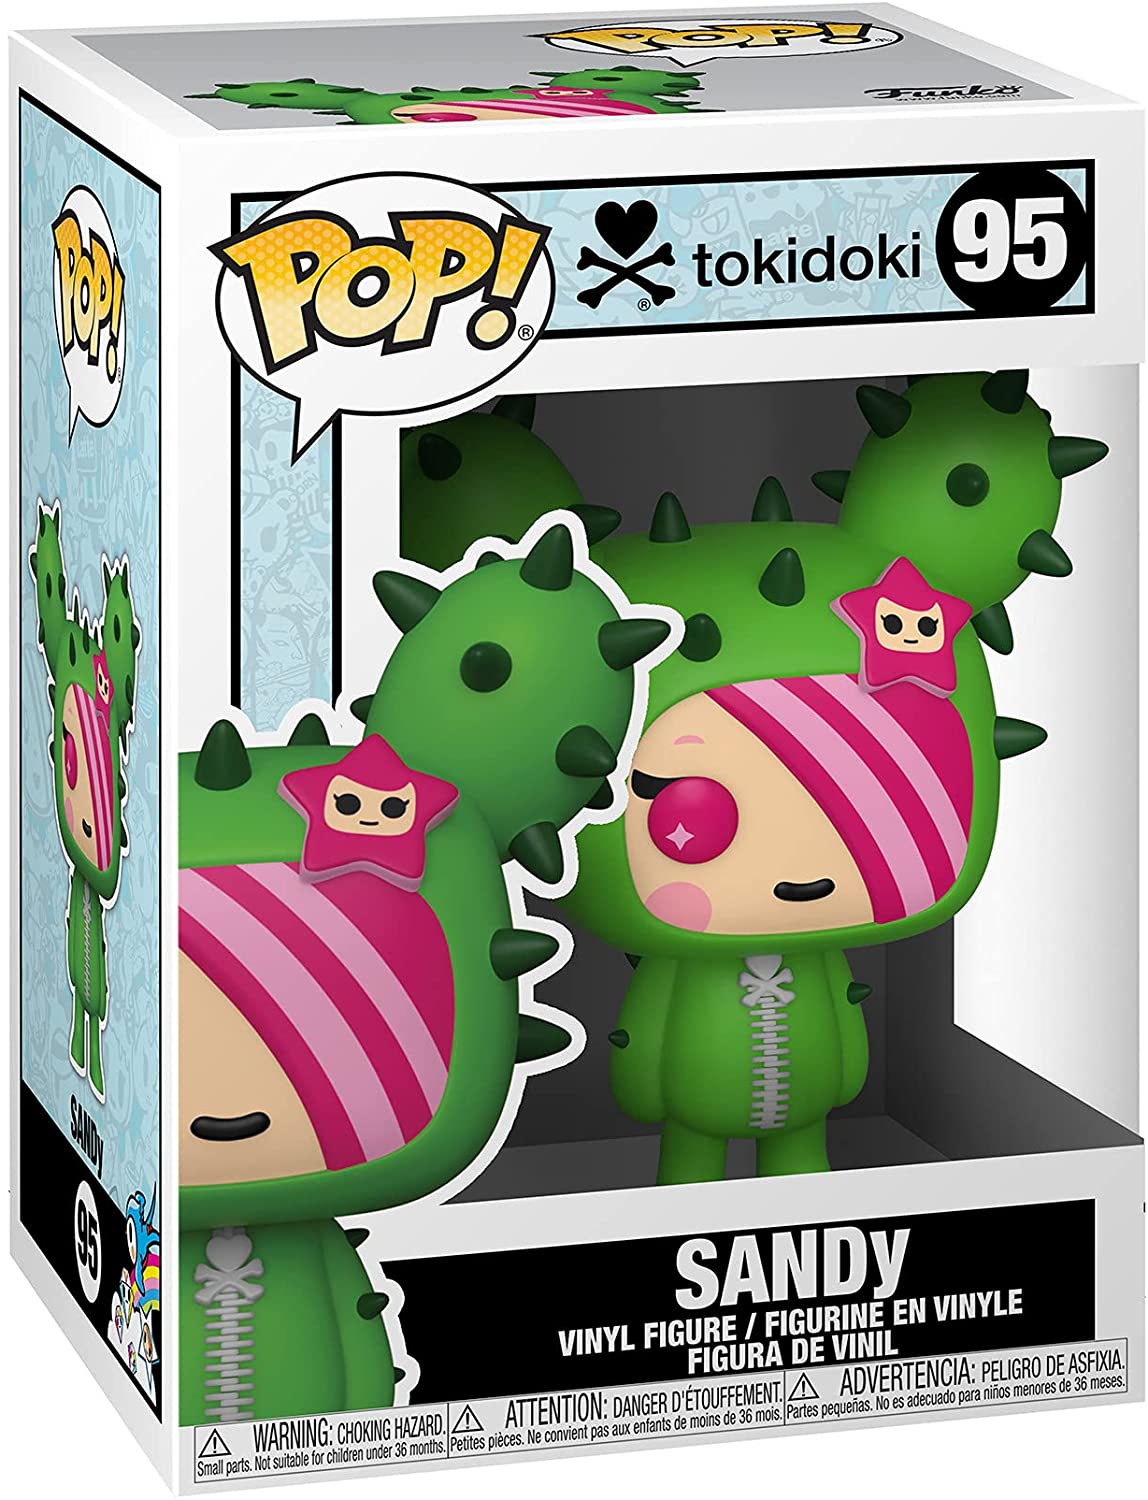 Funko Pop Tokidoki toys